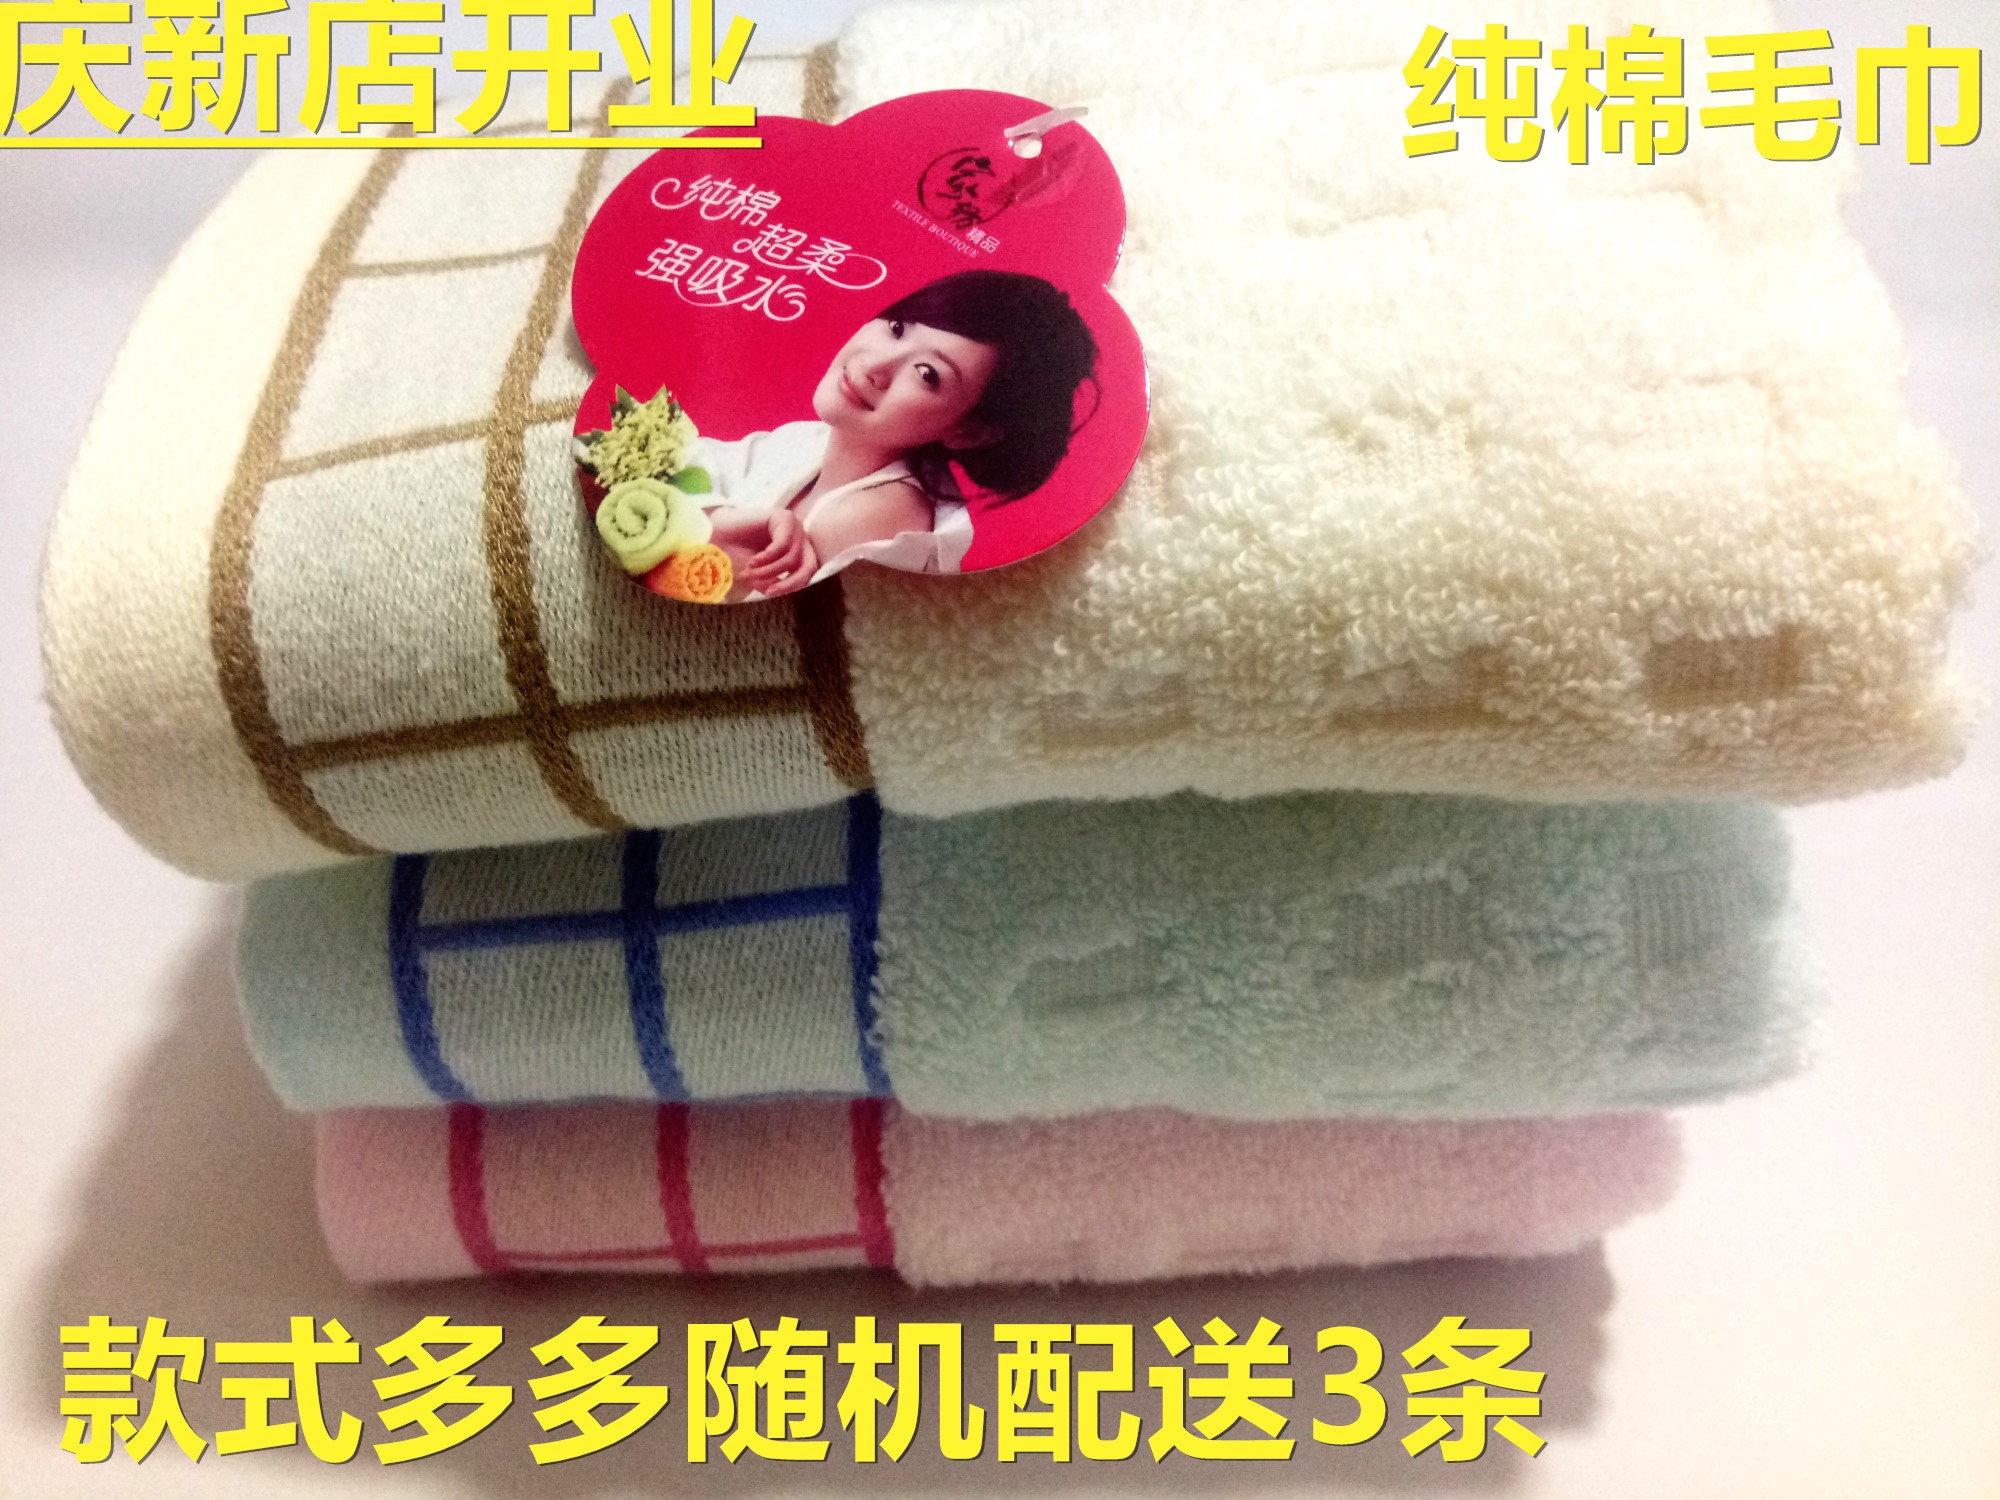 正品毛巾庆新店开业品牌纯棉精品毛巾/棉绒毛巾3条包邮款式随机。